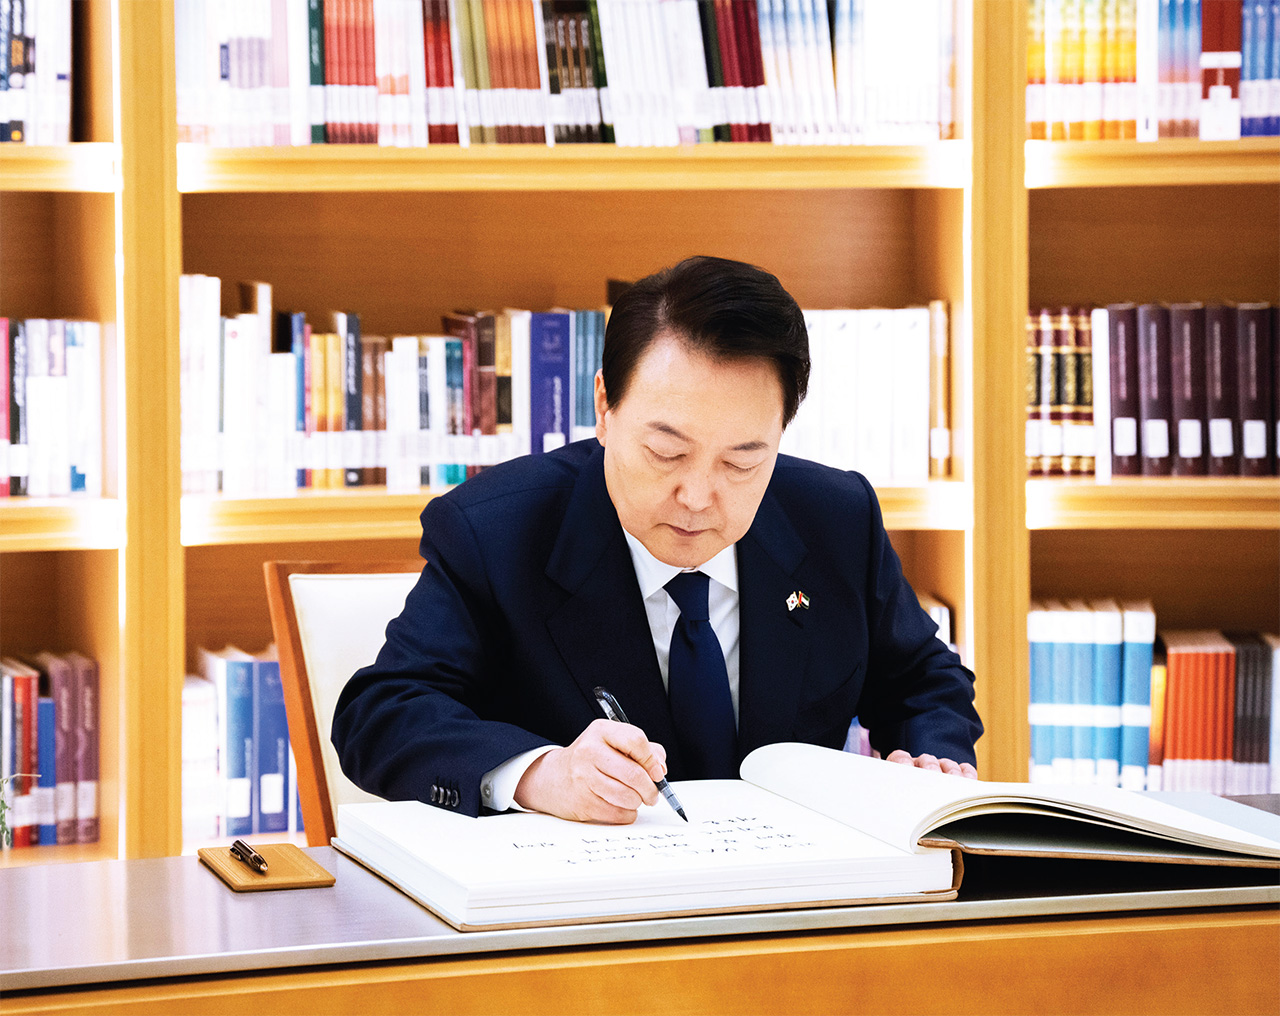 الصورة : الرئيس الكوري يدوّن كلمة في سجل كبار الزوار